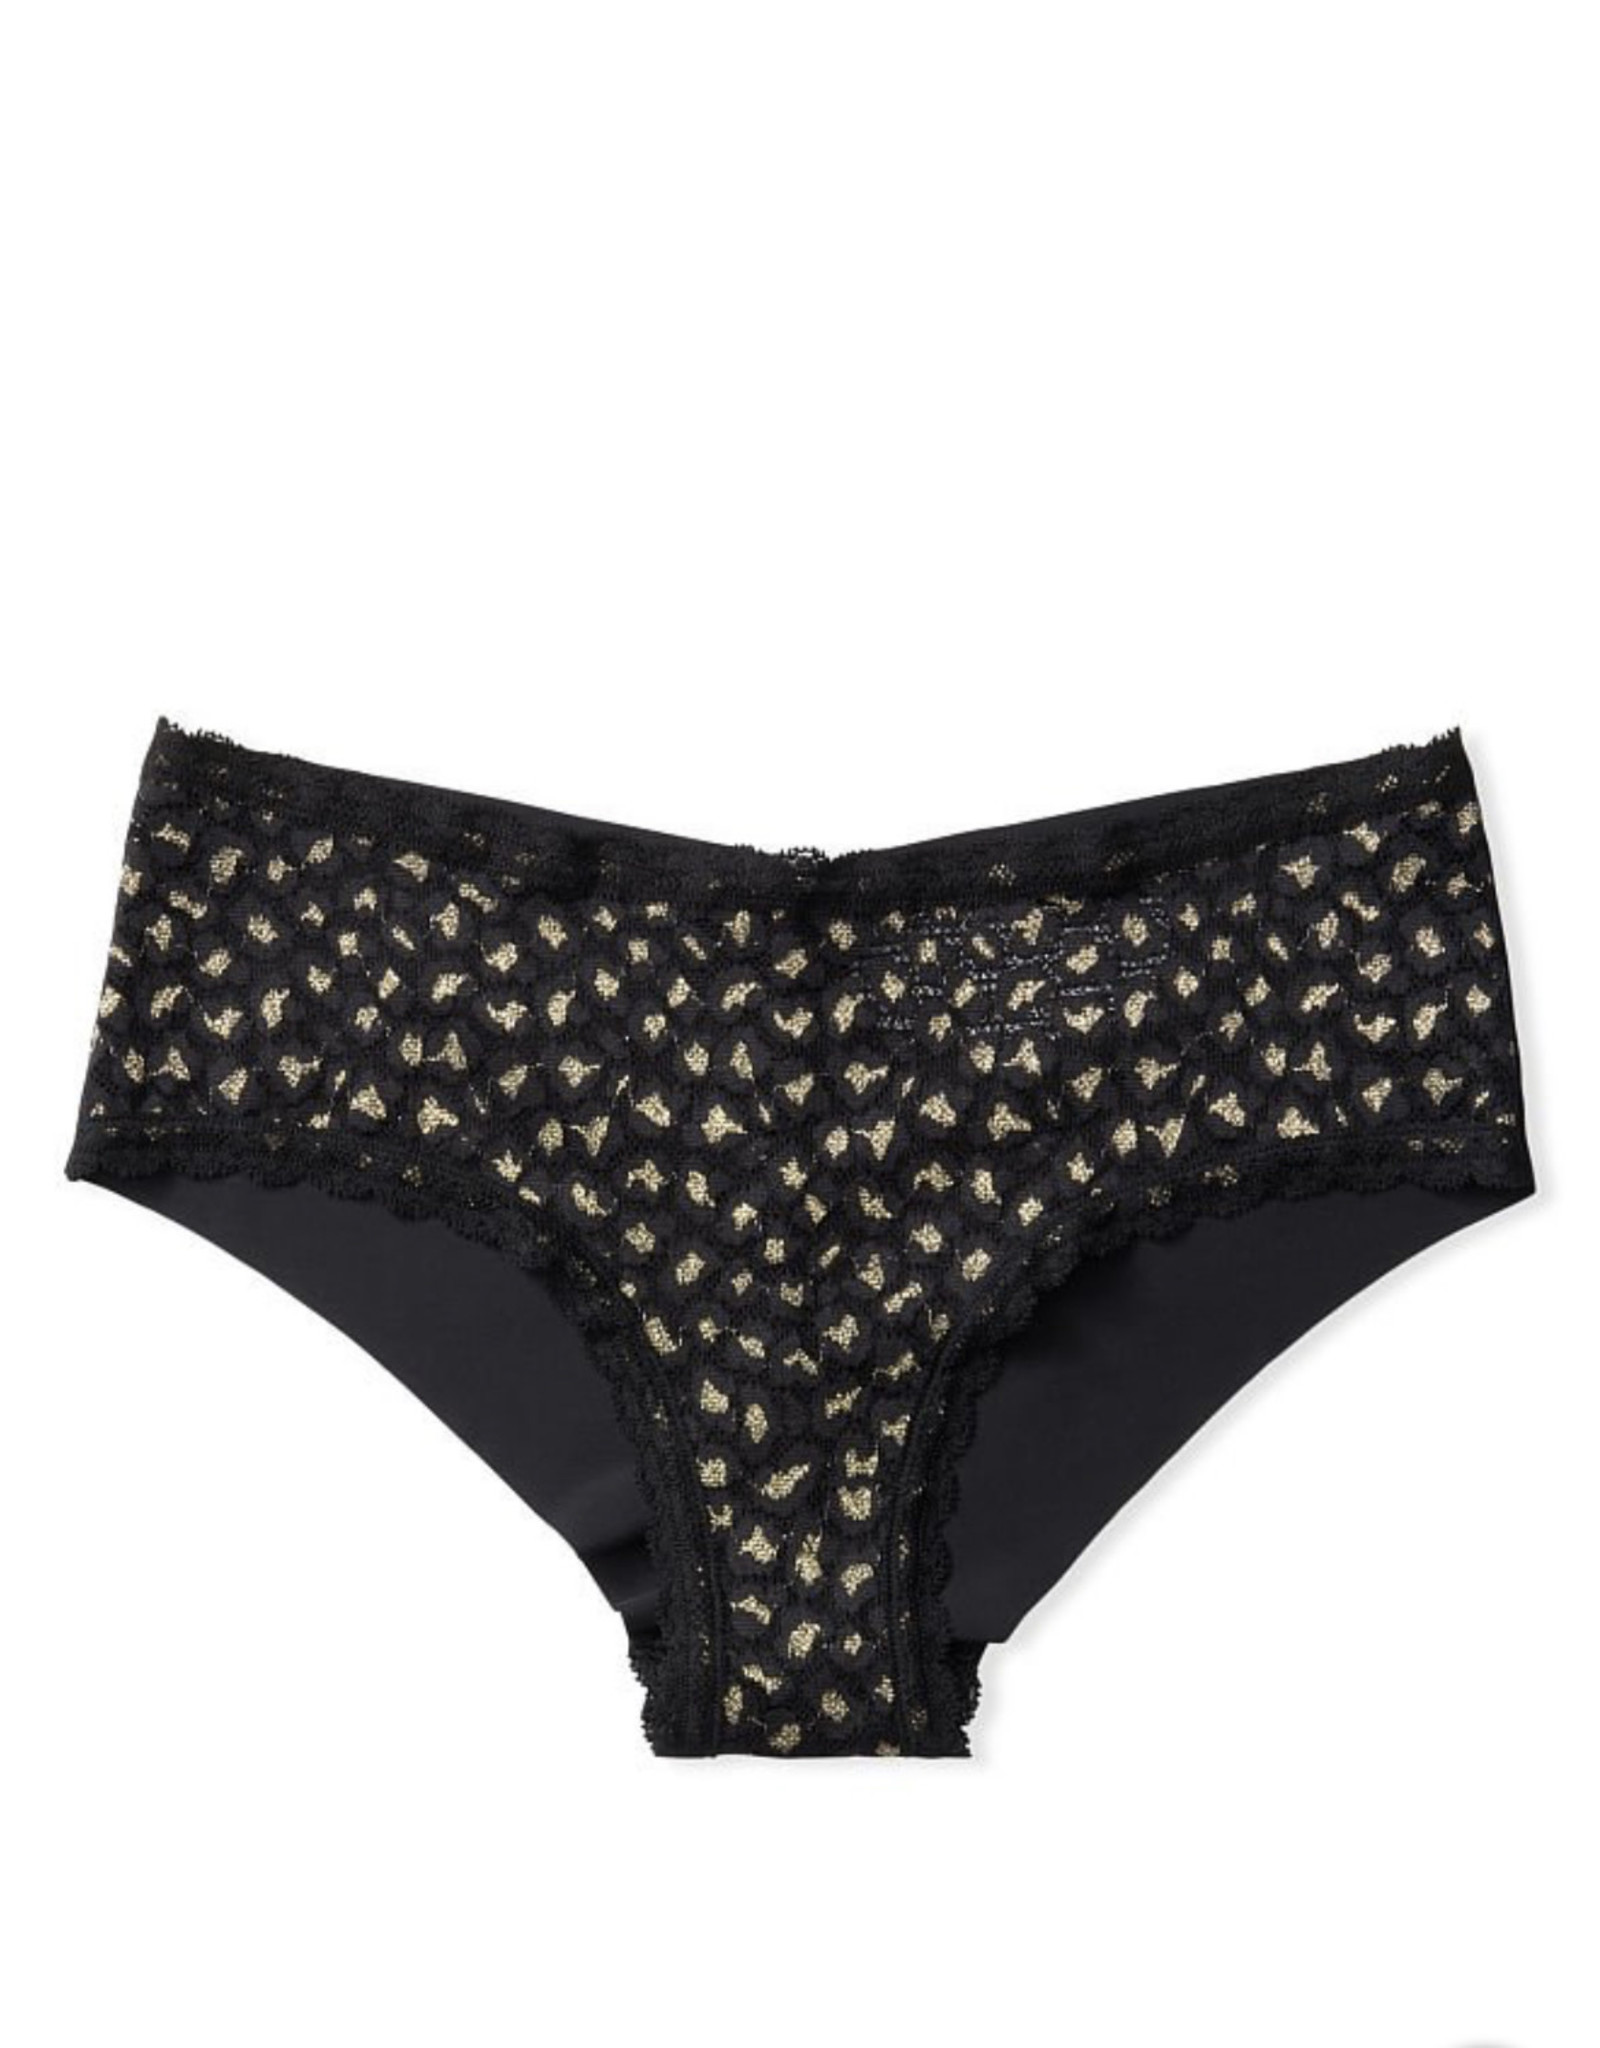 Victoria's Secret Victoria’s Secret Panty Leopard Lace Cheeky Panty